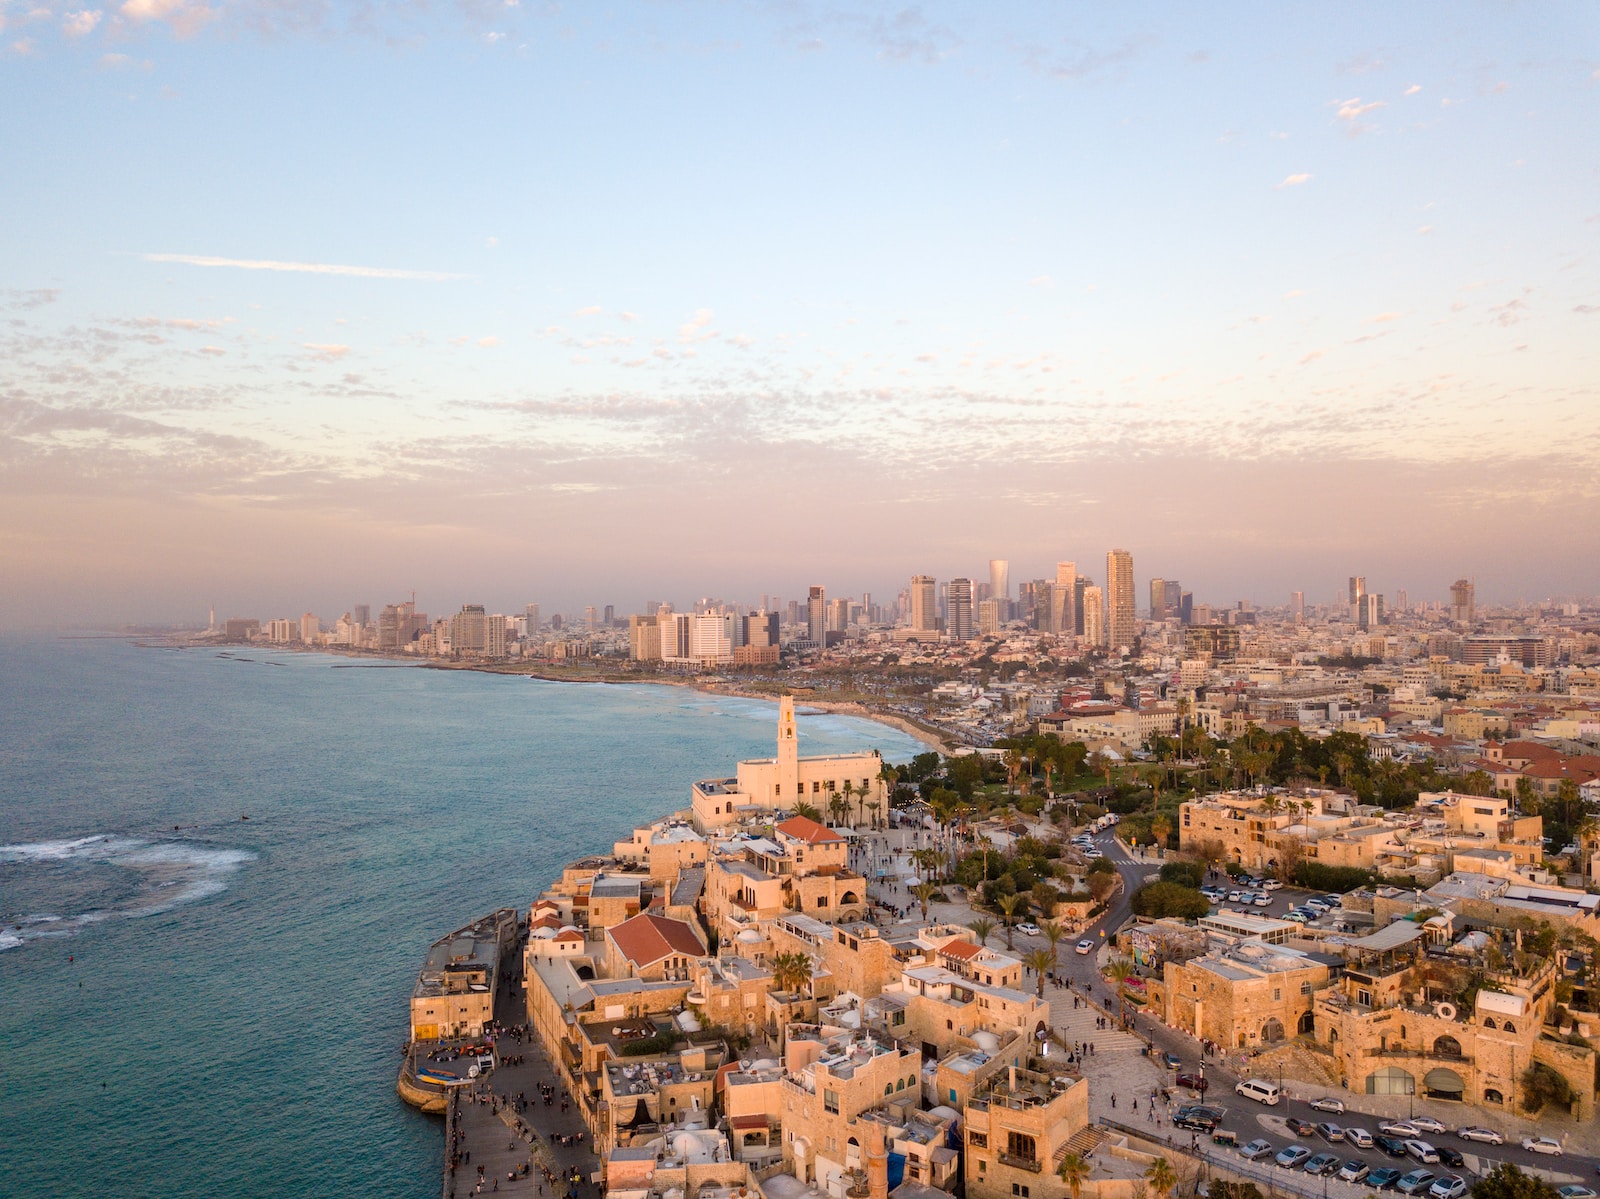 A Közel-Kelet tíz legnagyszerűbb látnivalója között szerepel a Holt-tenger és Jeruzsálem